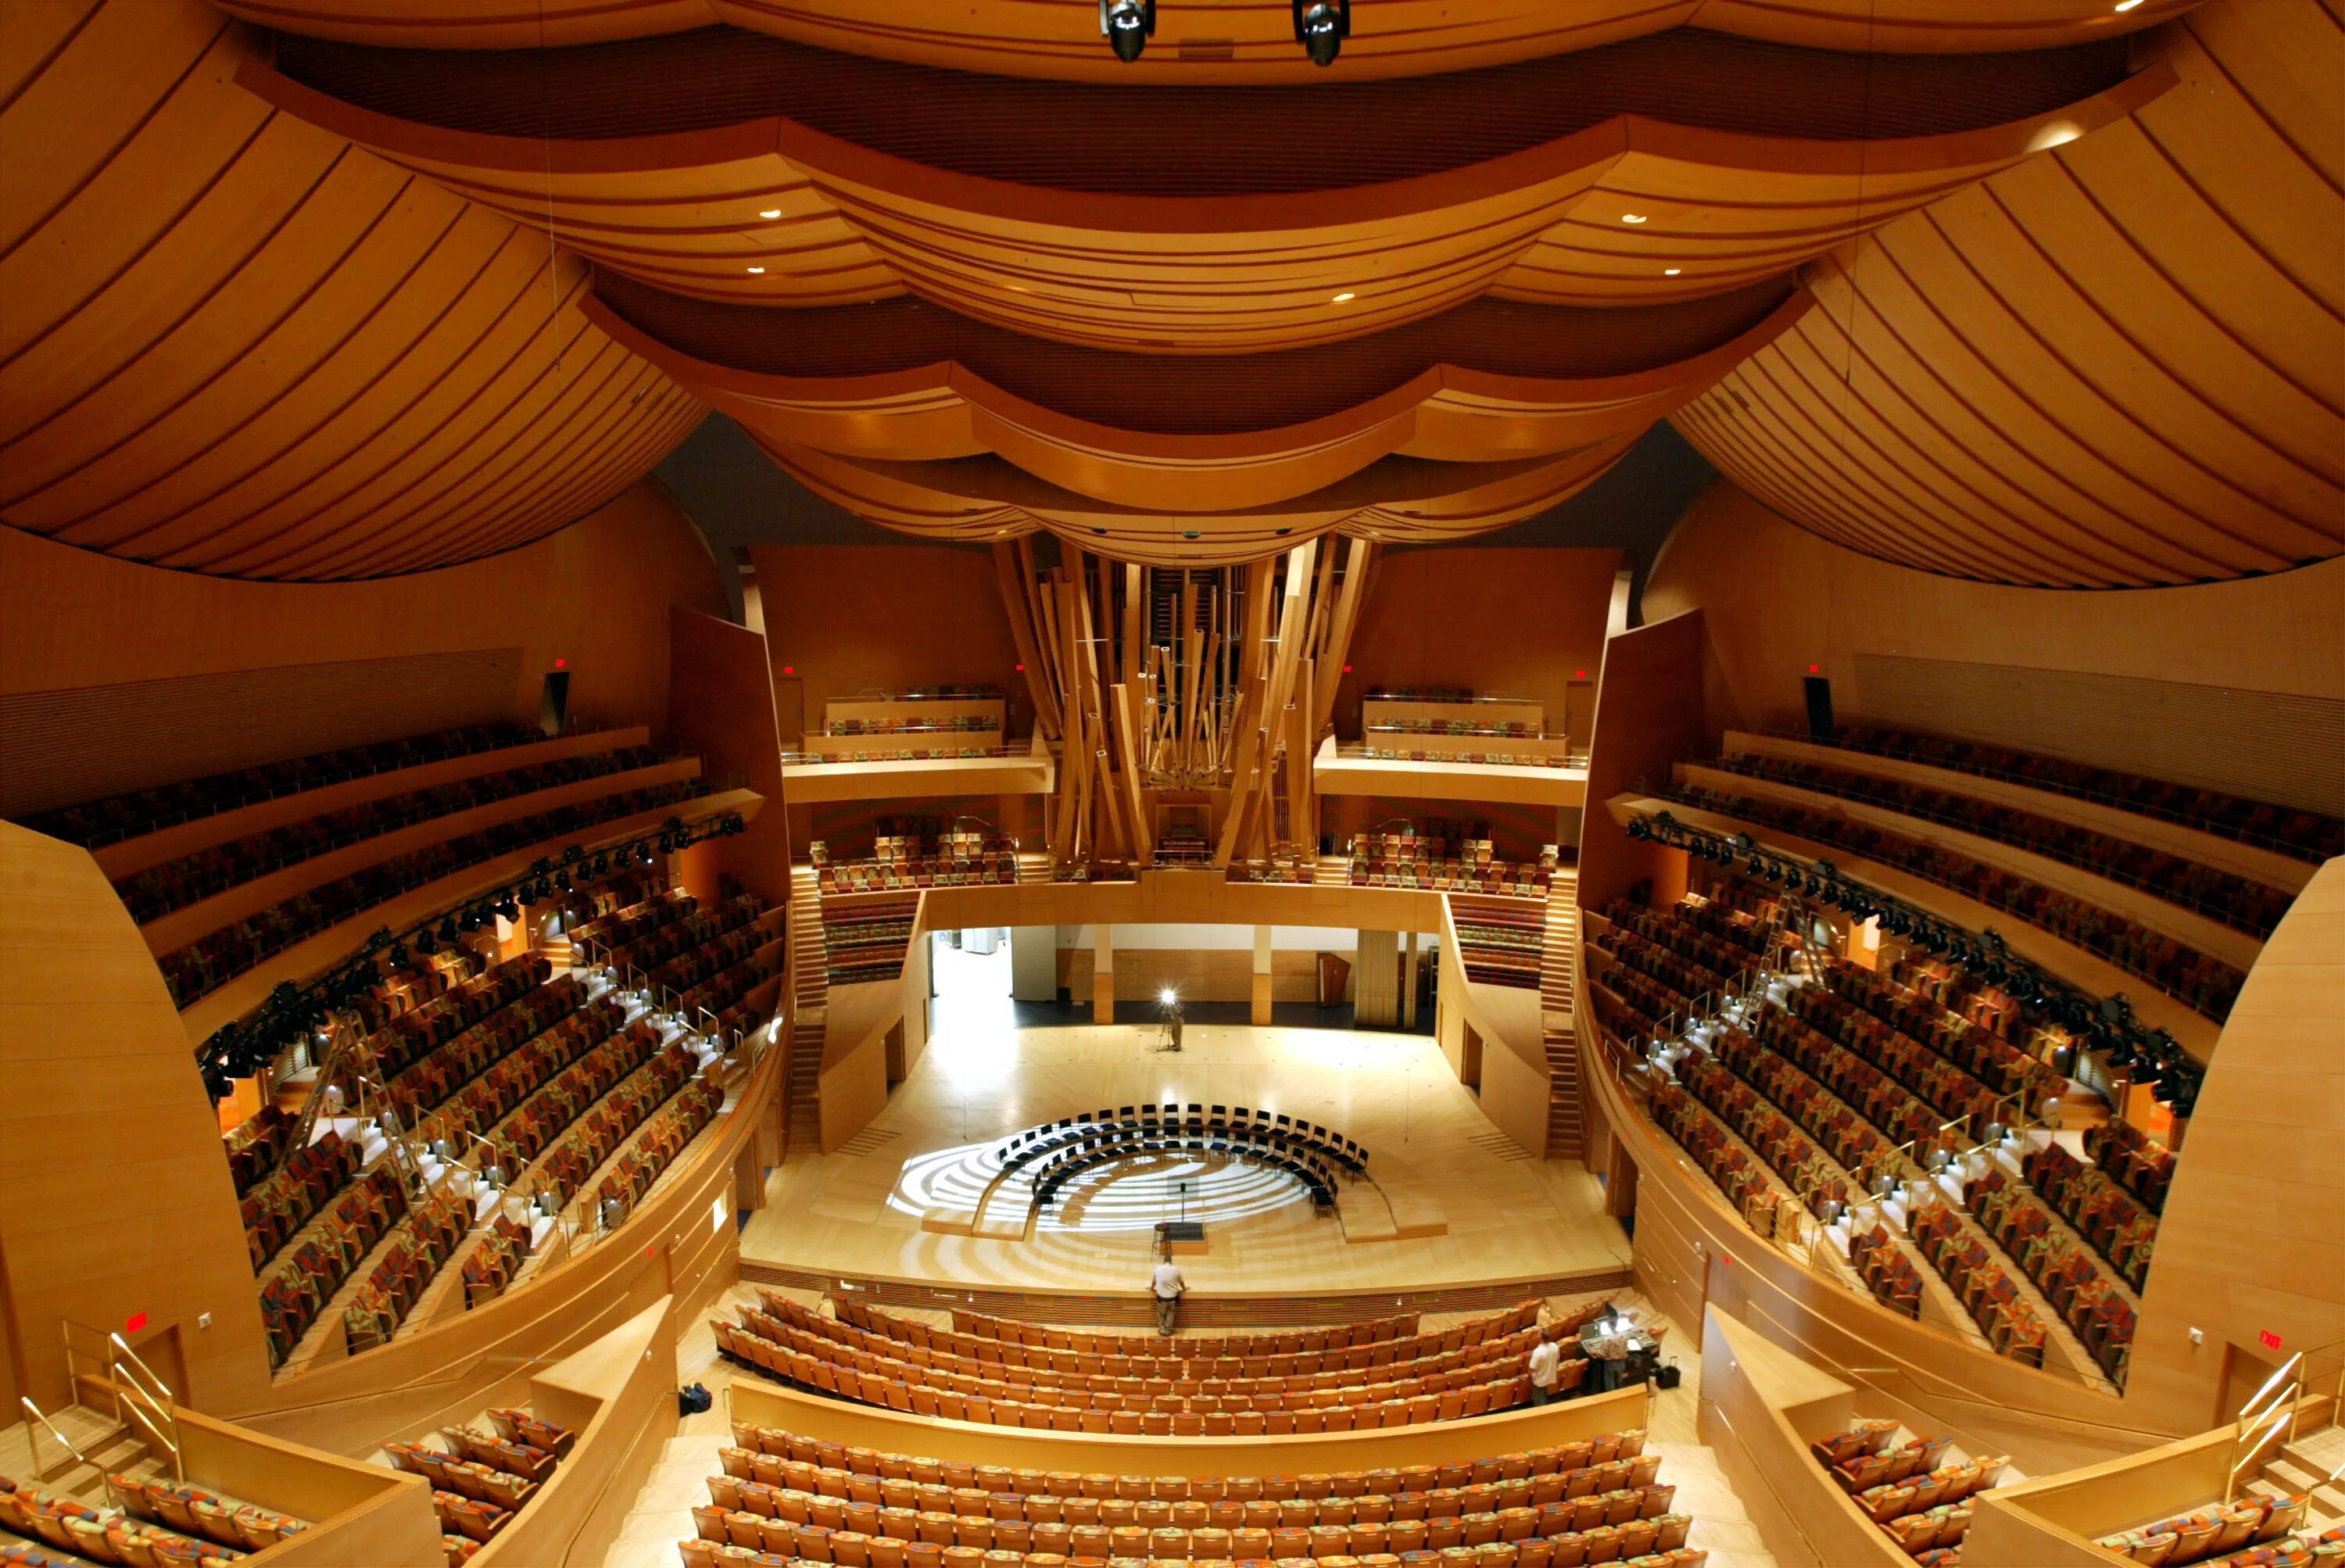 Концертный зал Уолта Диснея в Лос-Анджелесе, США. Walt Disney концертный зал (Лос Анджелес). Фрэнк Гери концертный зал Уолта Диснея. Зал Уолта Диснея (Лос-Анджелес, США, 2003 Г.).